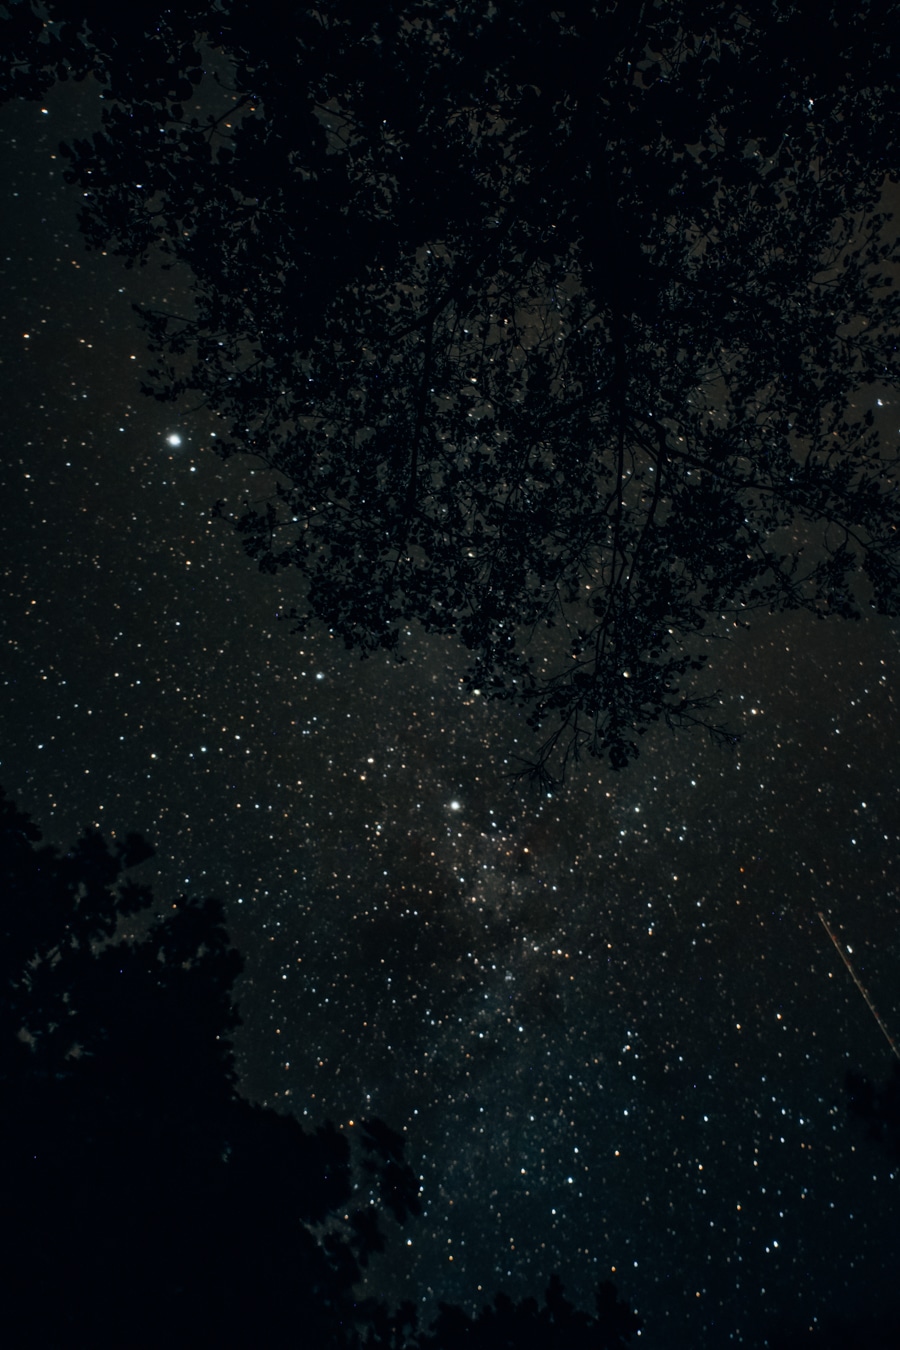 Sterne beoachten im Dark Sky Park Lauwarsmeer in Holland